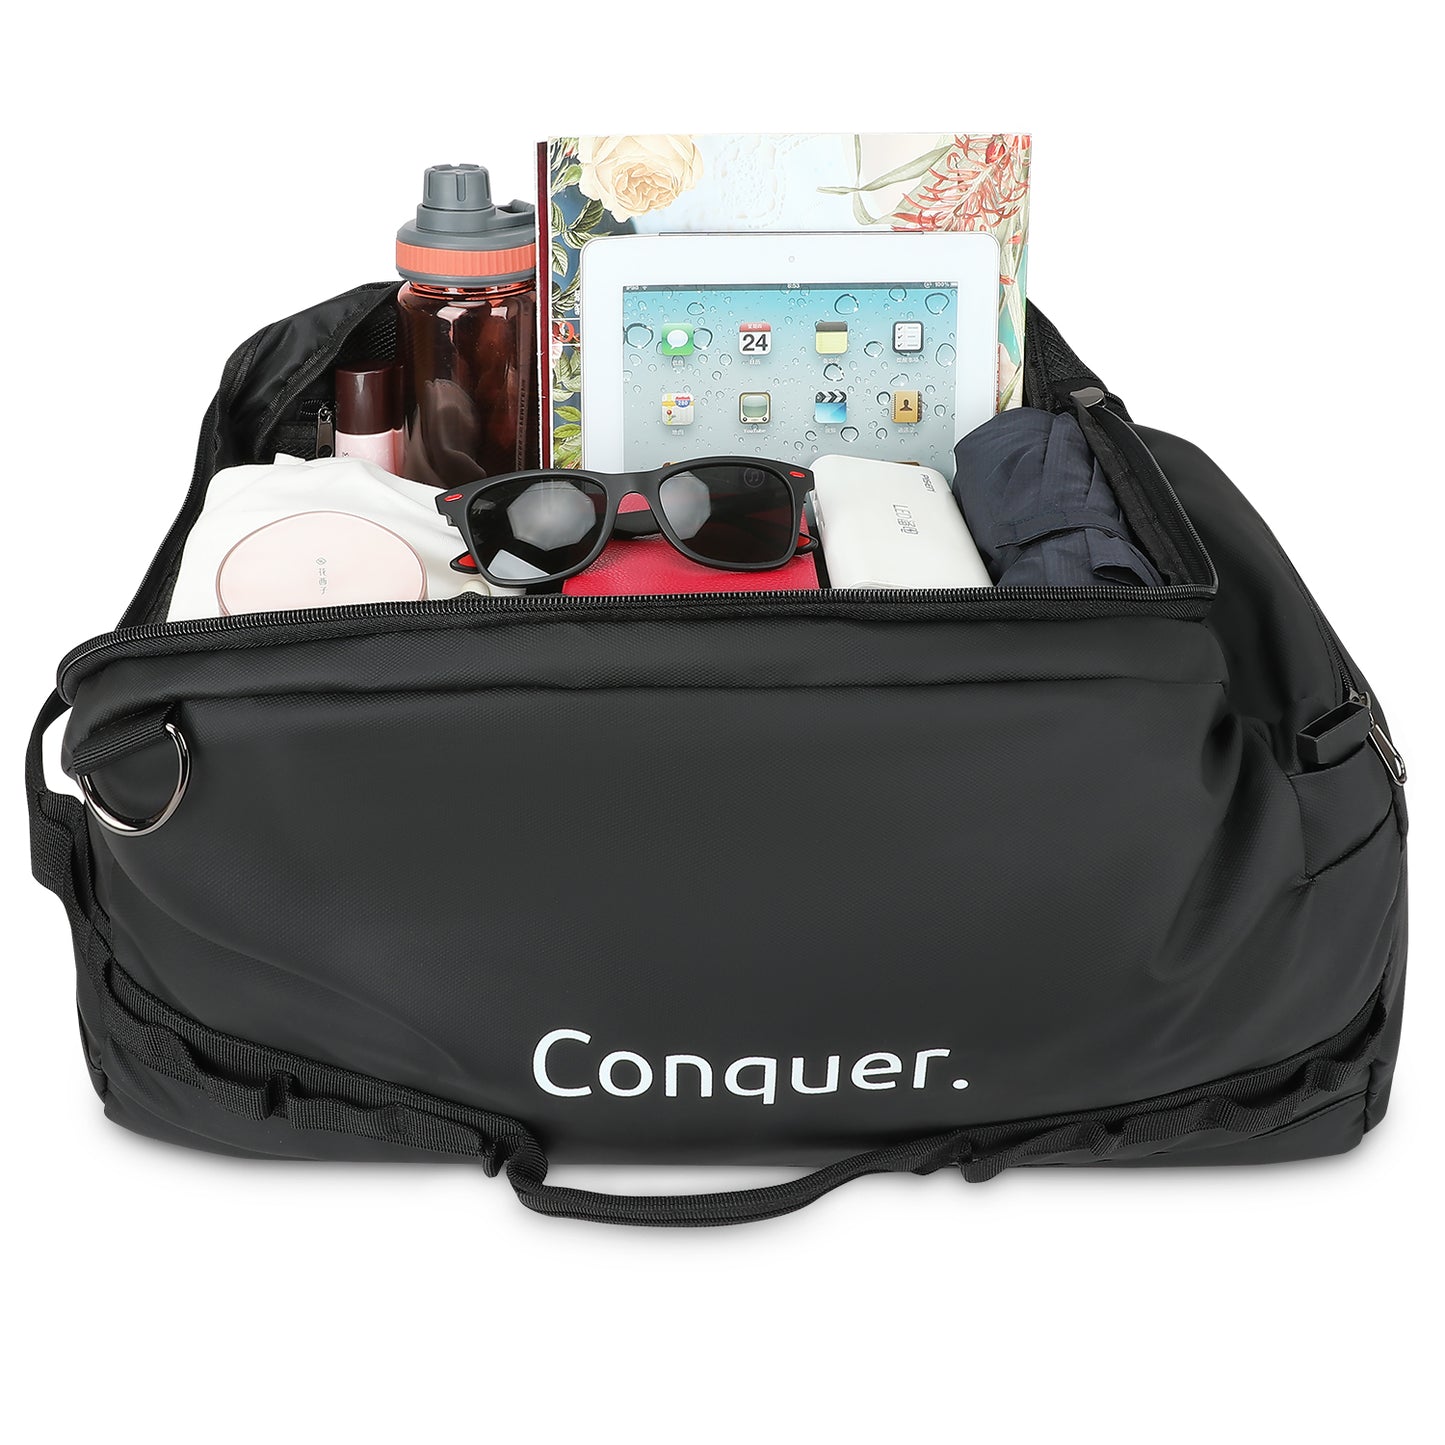 Conquer. Duffle Bag 60 L